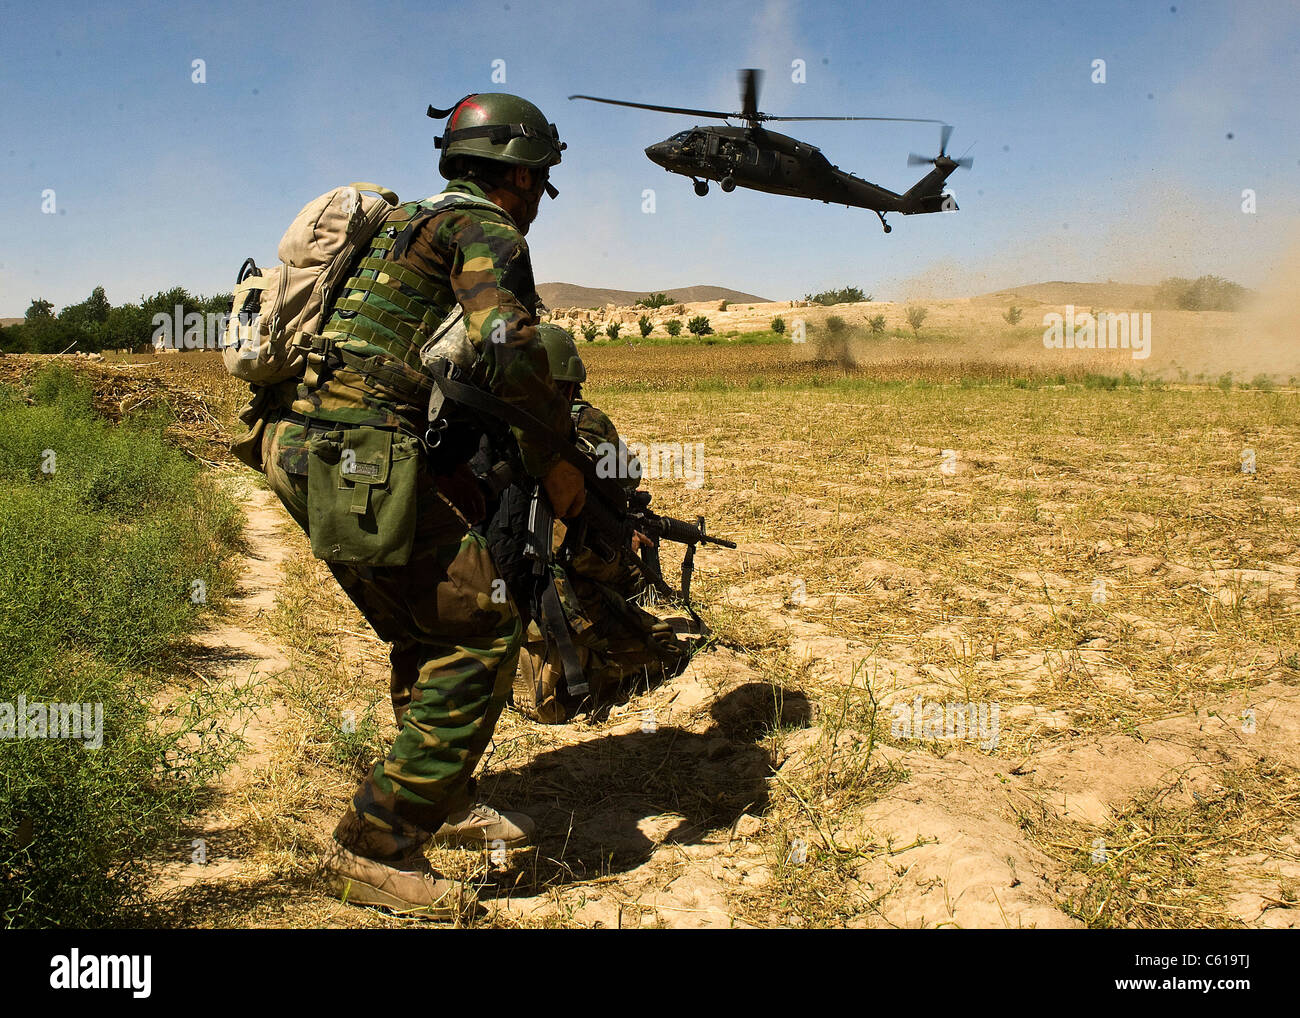 Un commando afghani le bretelle di se stesso come un UH-60 Black Hawk elicottero arriva per estrarre lui a seguito di una operazione di compensazione in quartiere Khakrez, provincia di Kandahar, Afghanistan, 31 maggio 2011. L'operazione ha causato il distacco di quattro sospetti insorti, nonché lo sfruttamento di IED e materiali per la fabbricazione di armi-dispositivo di puntamento. Il commando è assegnato all'esercito nazionale afghano di terza Commando Kandak. (U.S. Esercito foto di Sgt. Daniel P. ha scosso/rilasciato) Foto Stock